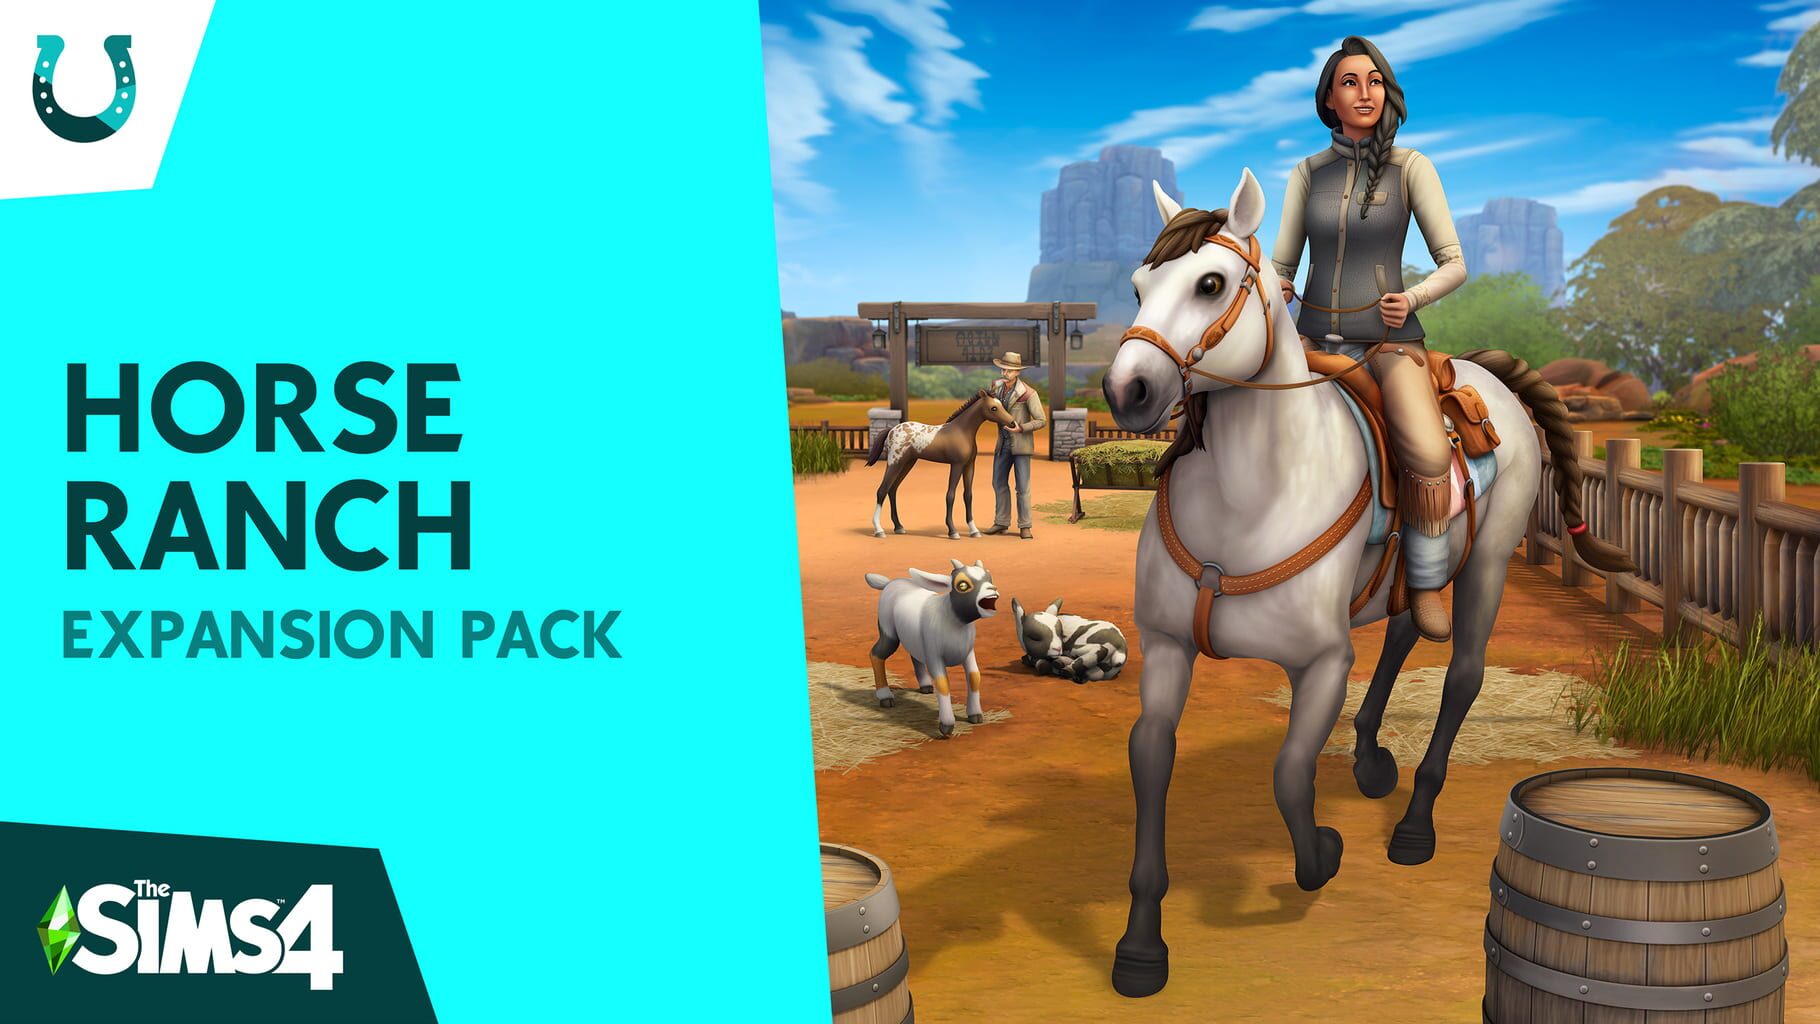 Arte - The Sims 4: Horse Ranch